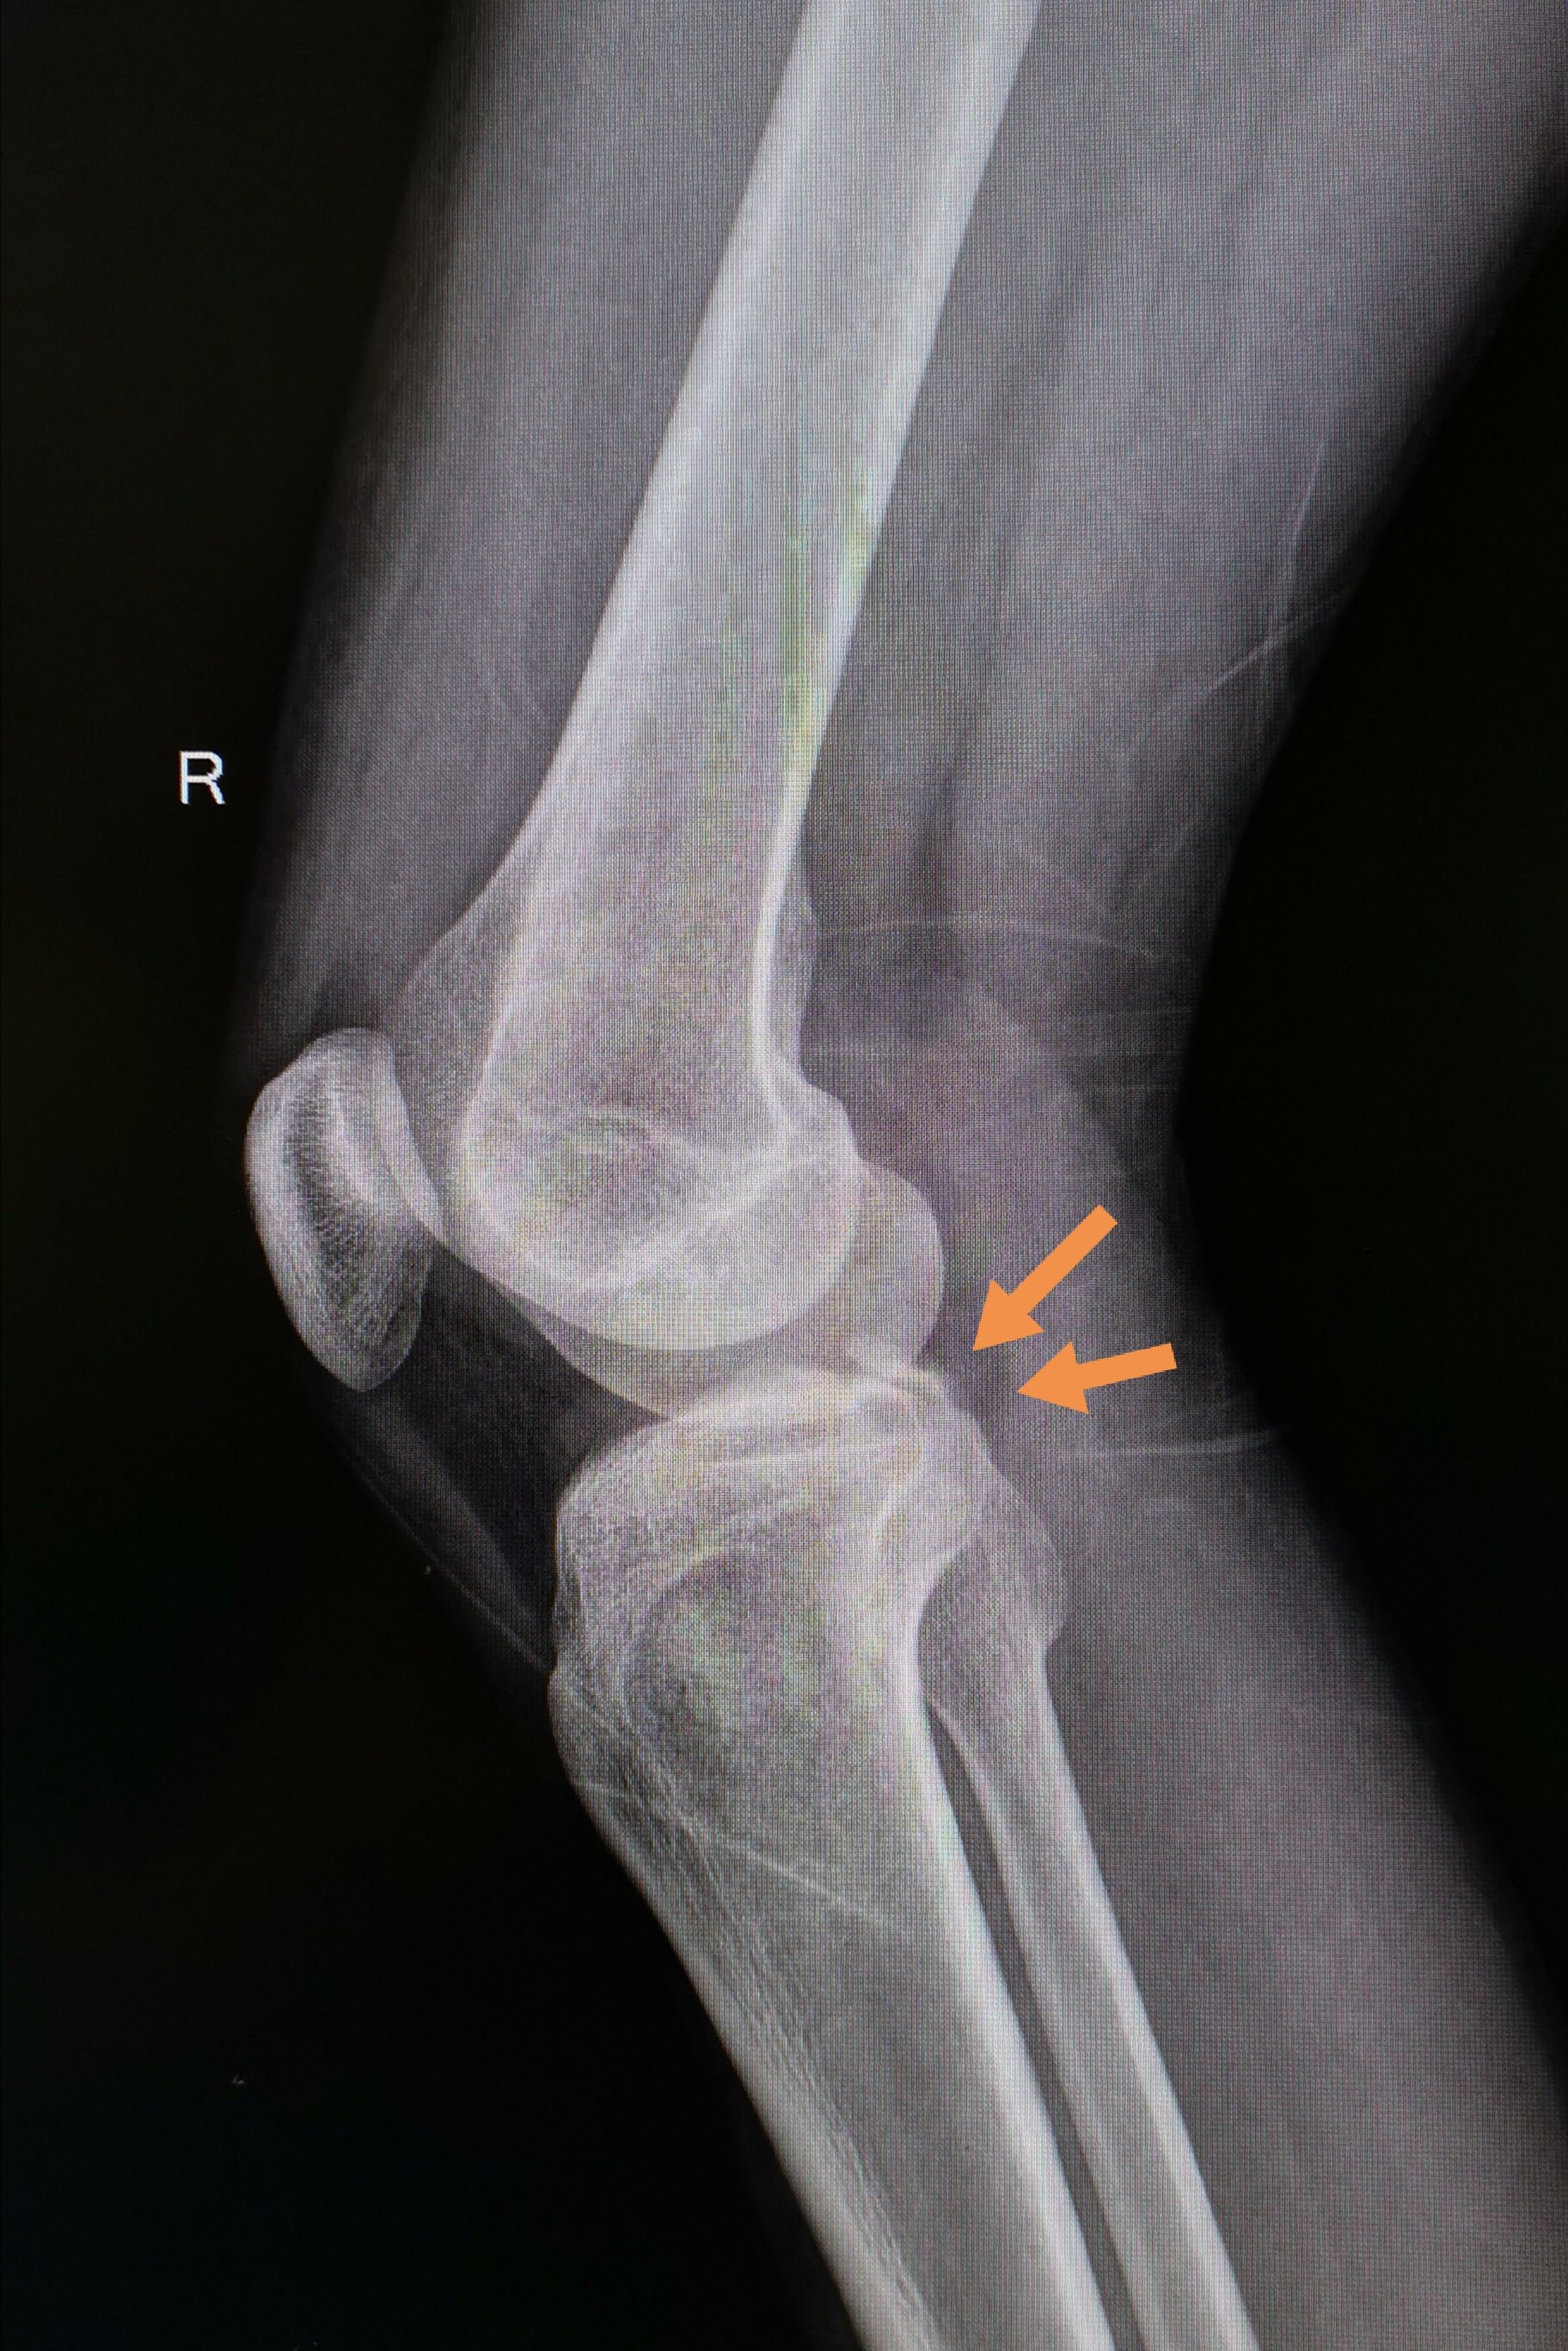 杨氏膝夹端提法治疗肩关节脱位并大结节撕脱骨折（有视频） - 骨科 -丁香园论坛